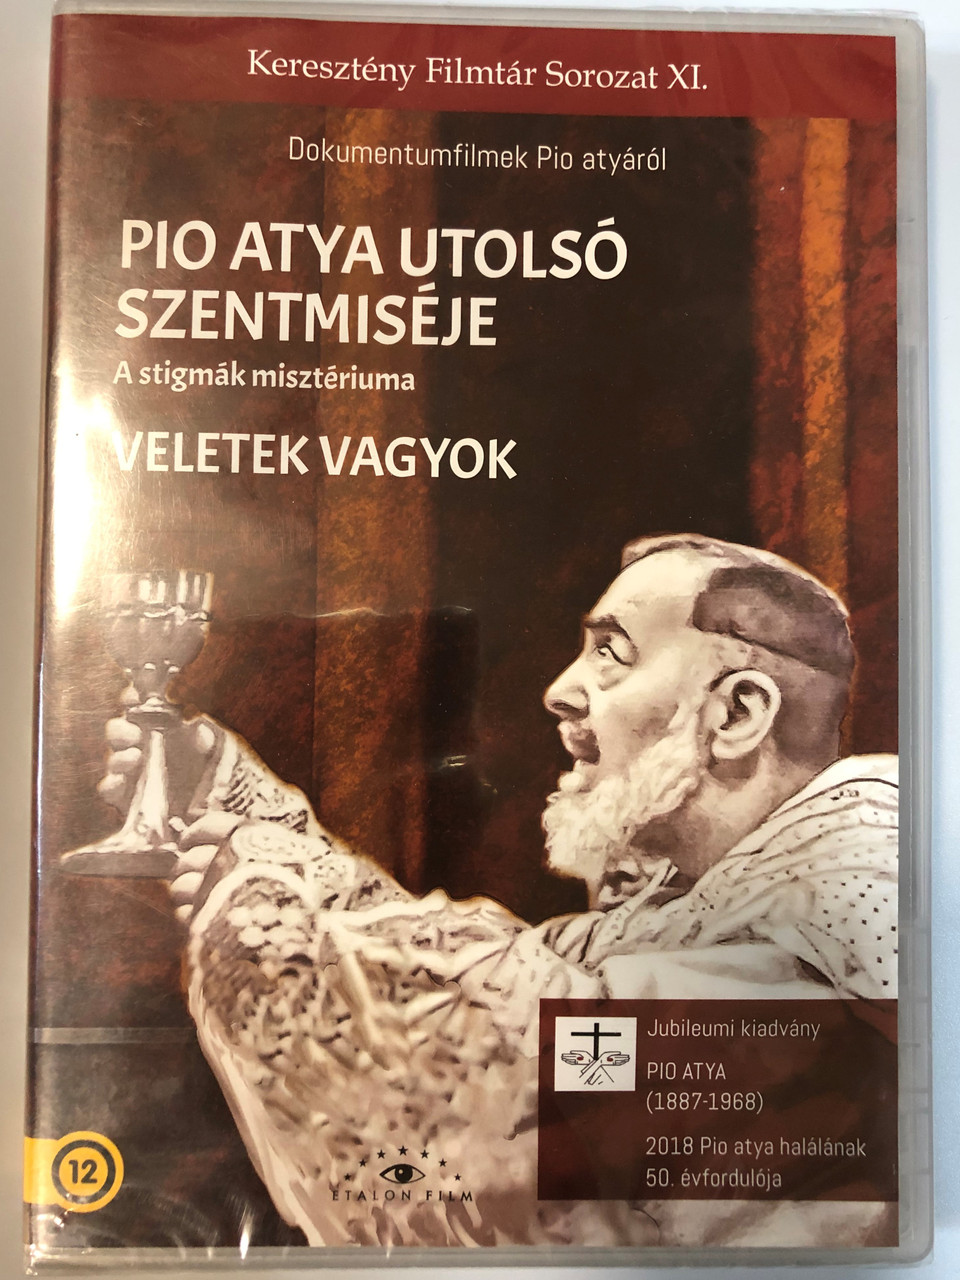 L'ultima S. Messa di Padre Pio DVD 1997 Pio atya utolsó szentmiséje /  Dokumentumfilmek Pio atyáról / A stigmák misztériuma / Keresztény Filmtár  Sorozat XI / Jubileumi kiadvány - 2018 Pio atya halálának 50, évfordulója /  Etalon film - bibleinmylanguage